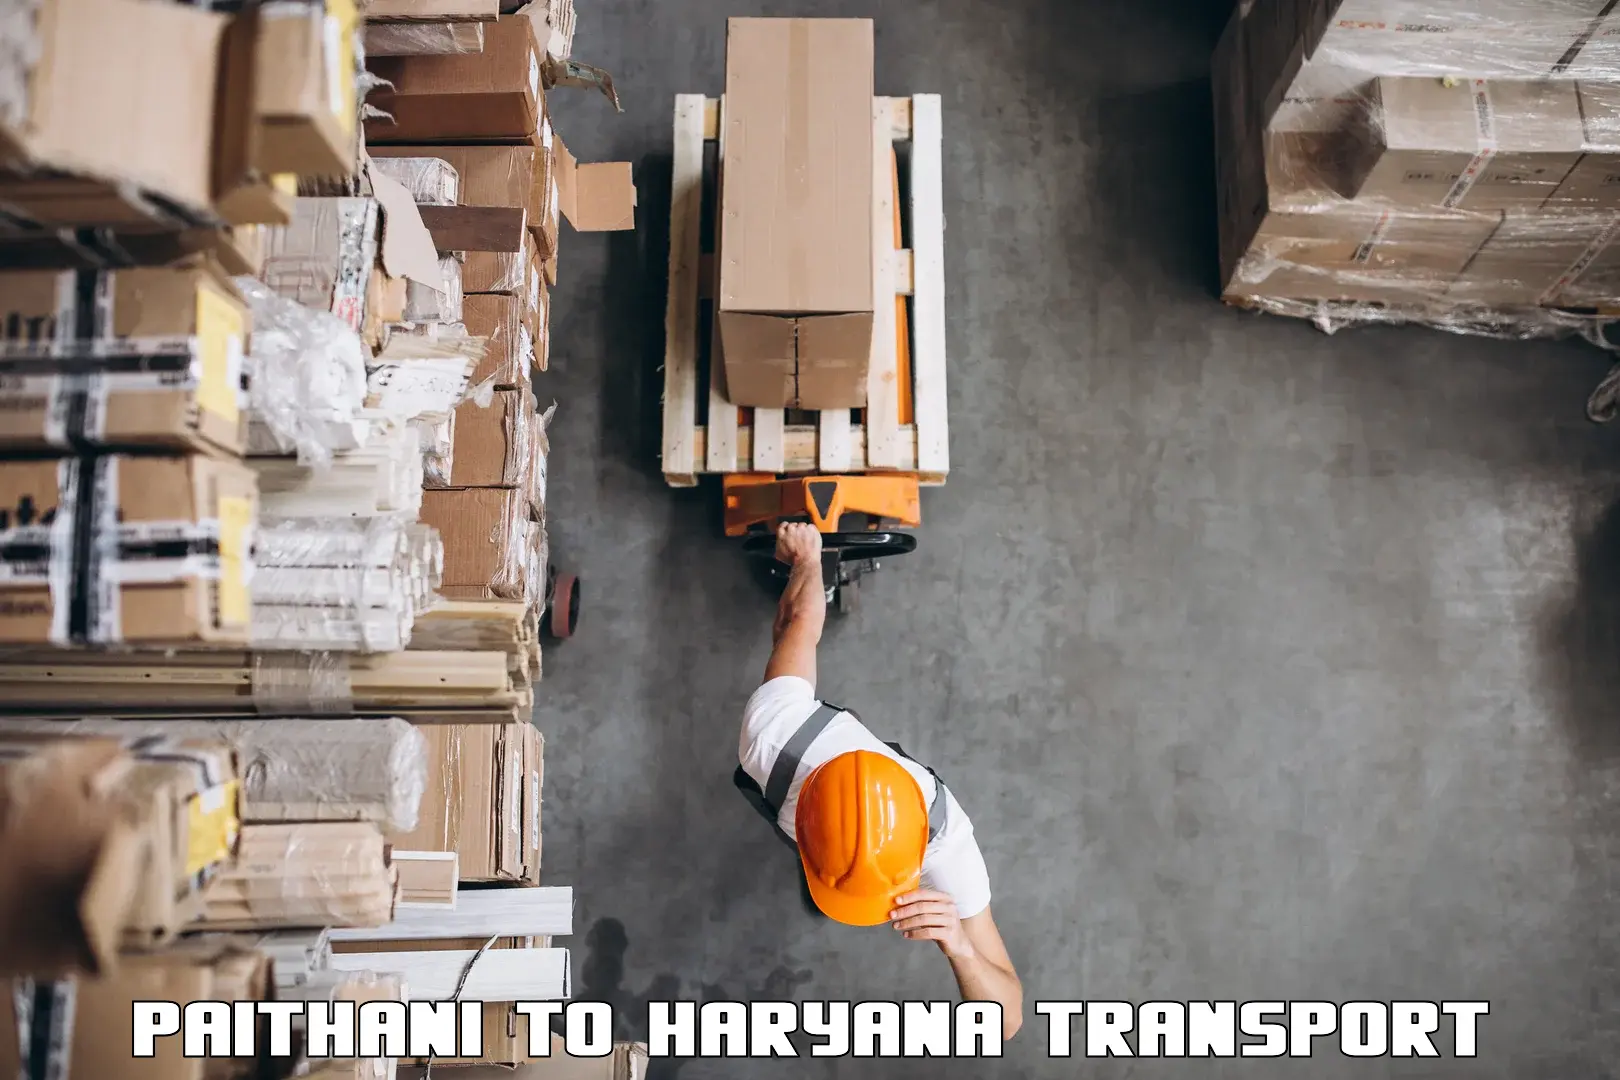 International cargo transportation services Paithani to Charkhi Dadri